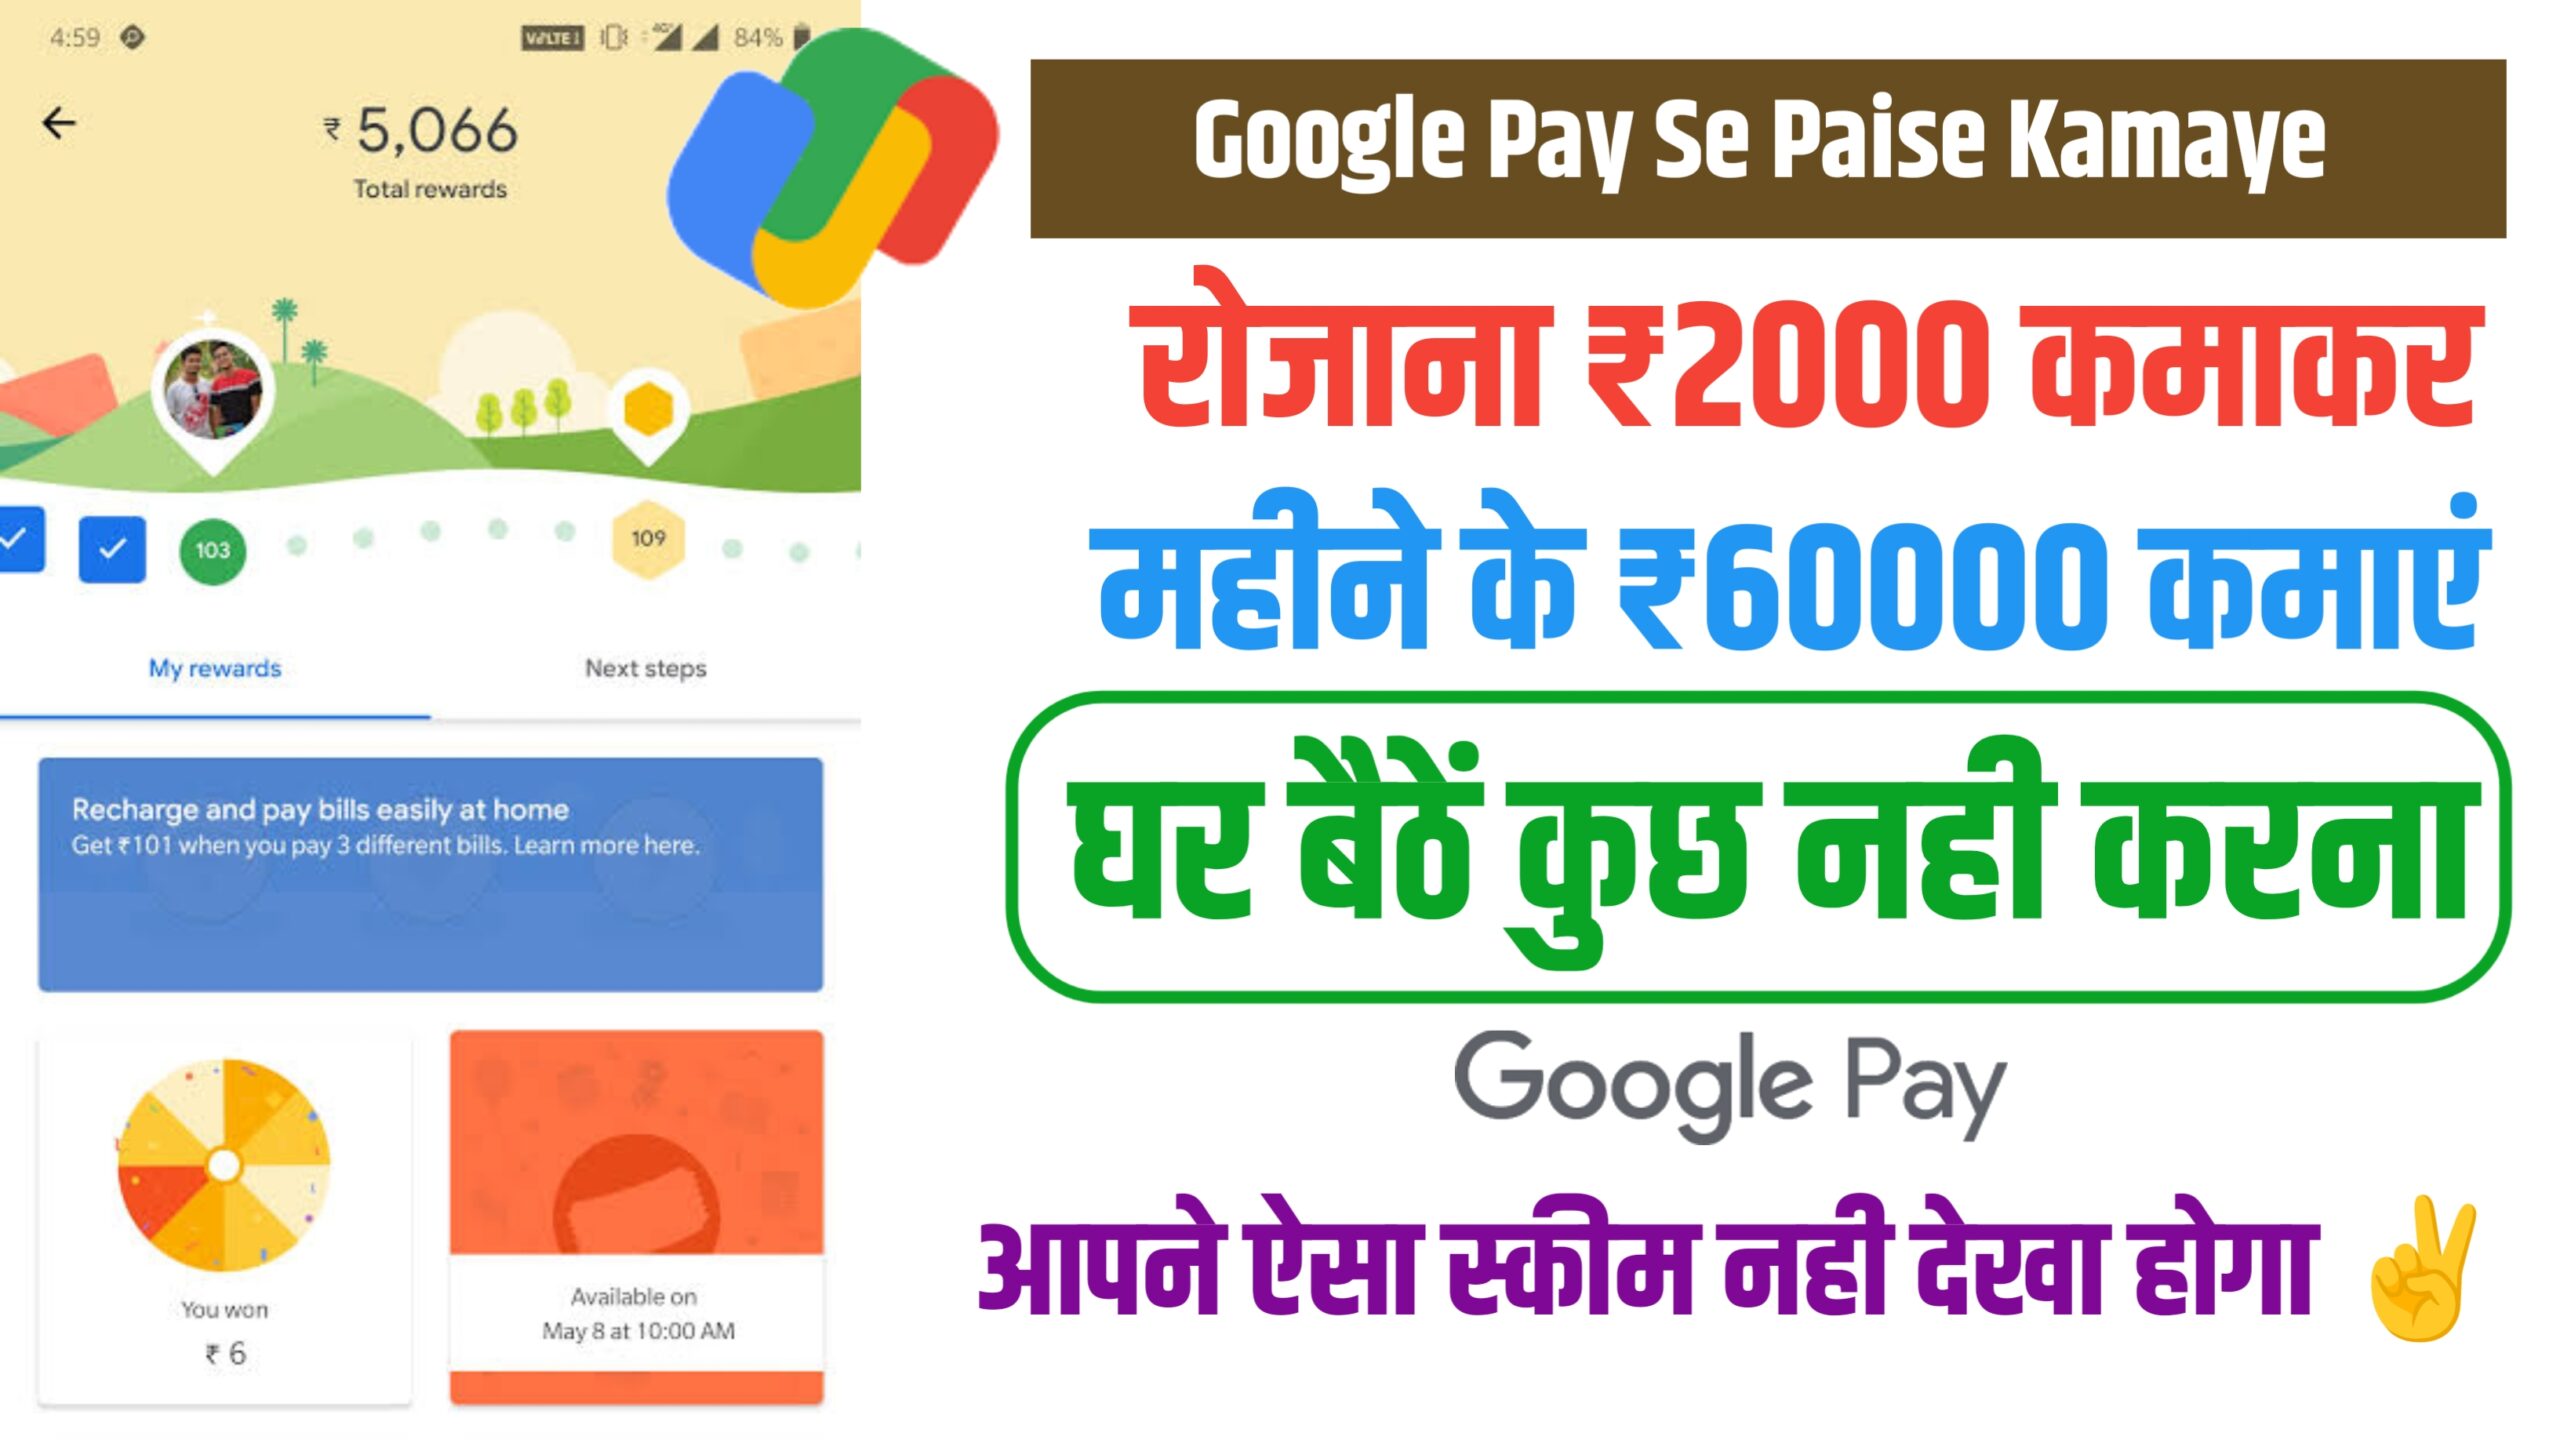 Google Pay Se Paise Kamaye : गूगल पे से पैसे कैसे कमाएं , रोजाना ₹2000 कमाकर महीने के ₹60000 कमाएं